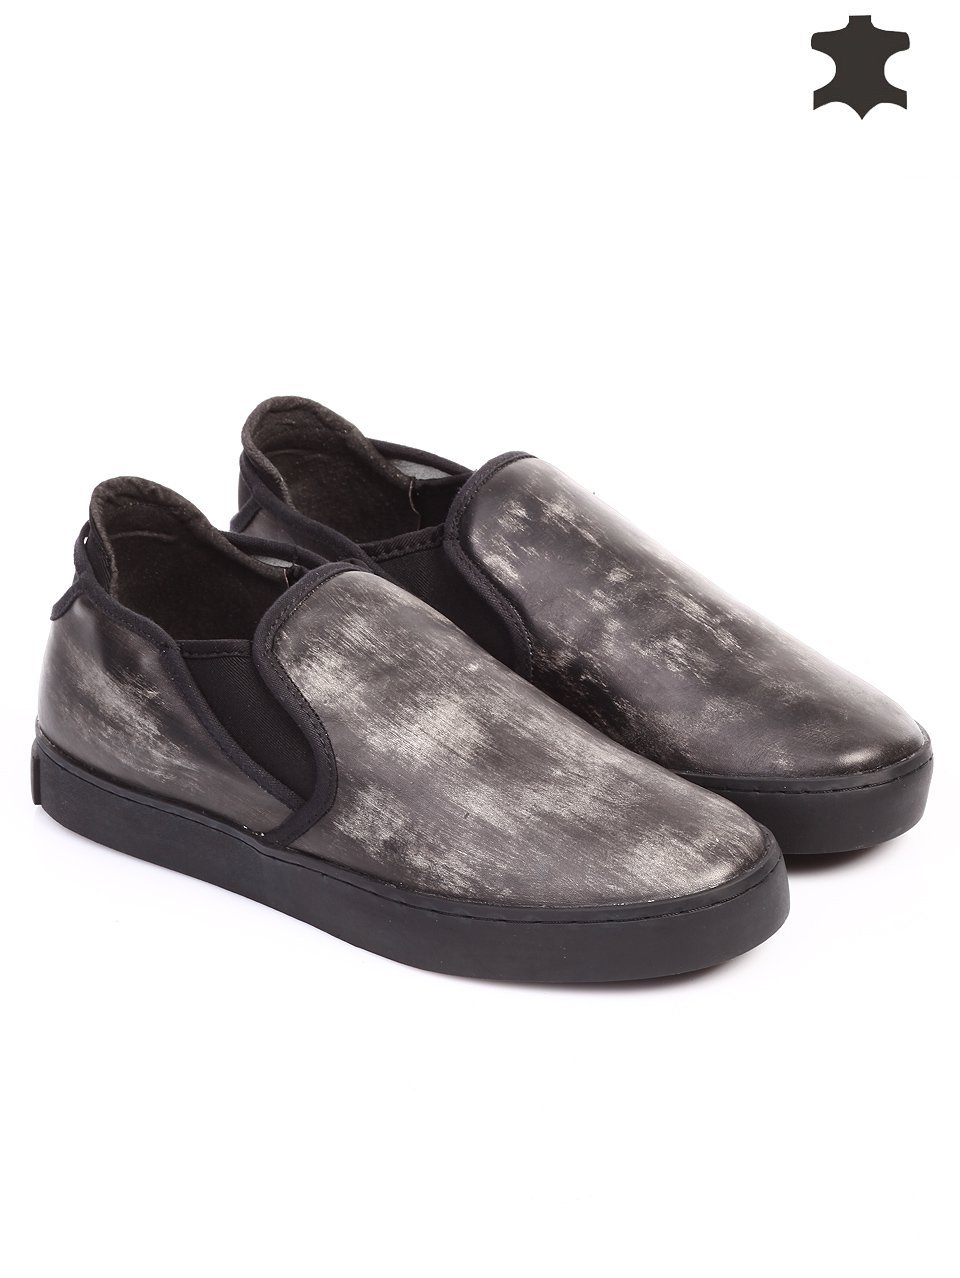 Ежедневни мъжки обувки от естествена кожа в черно 7T-15729 black